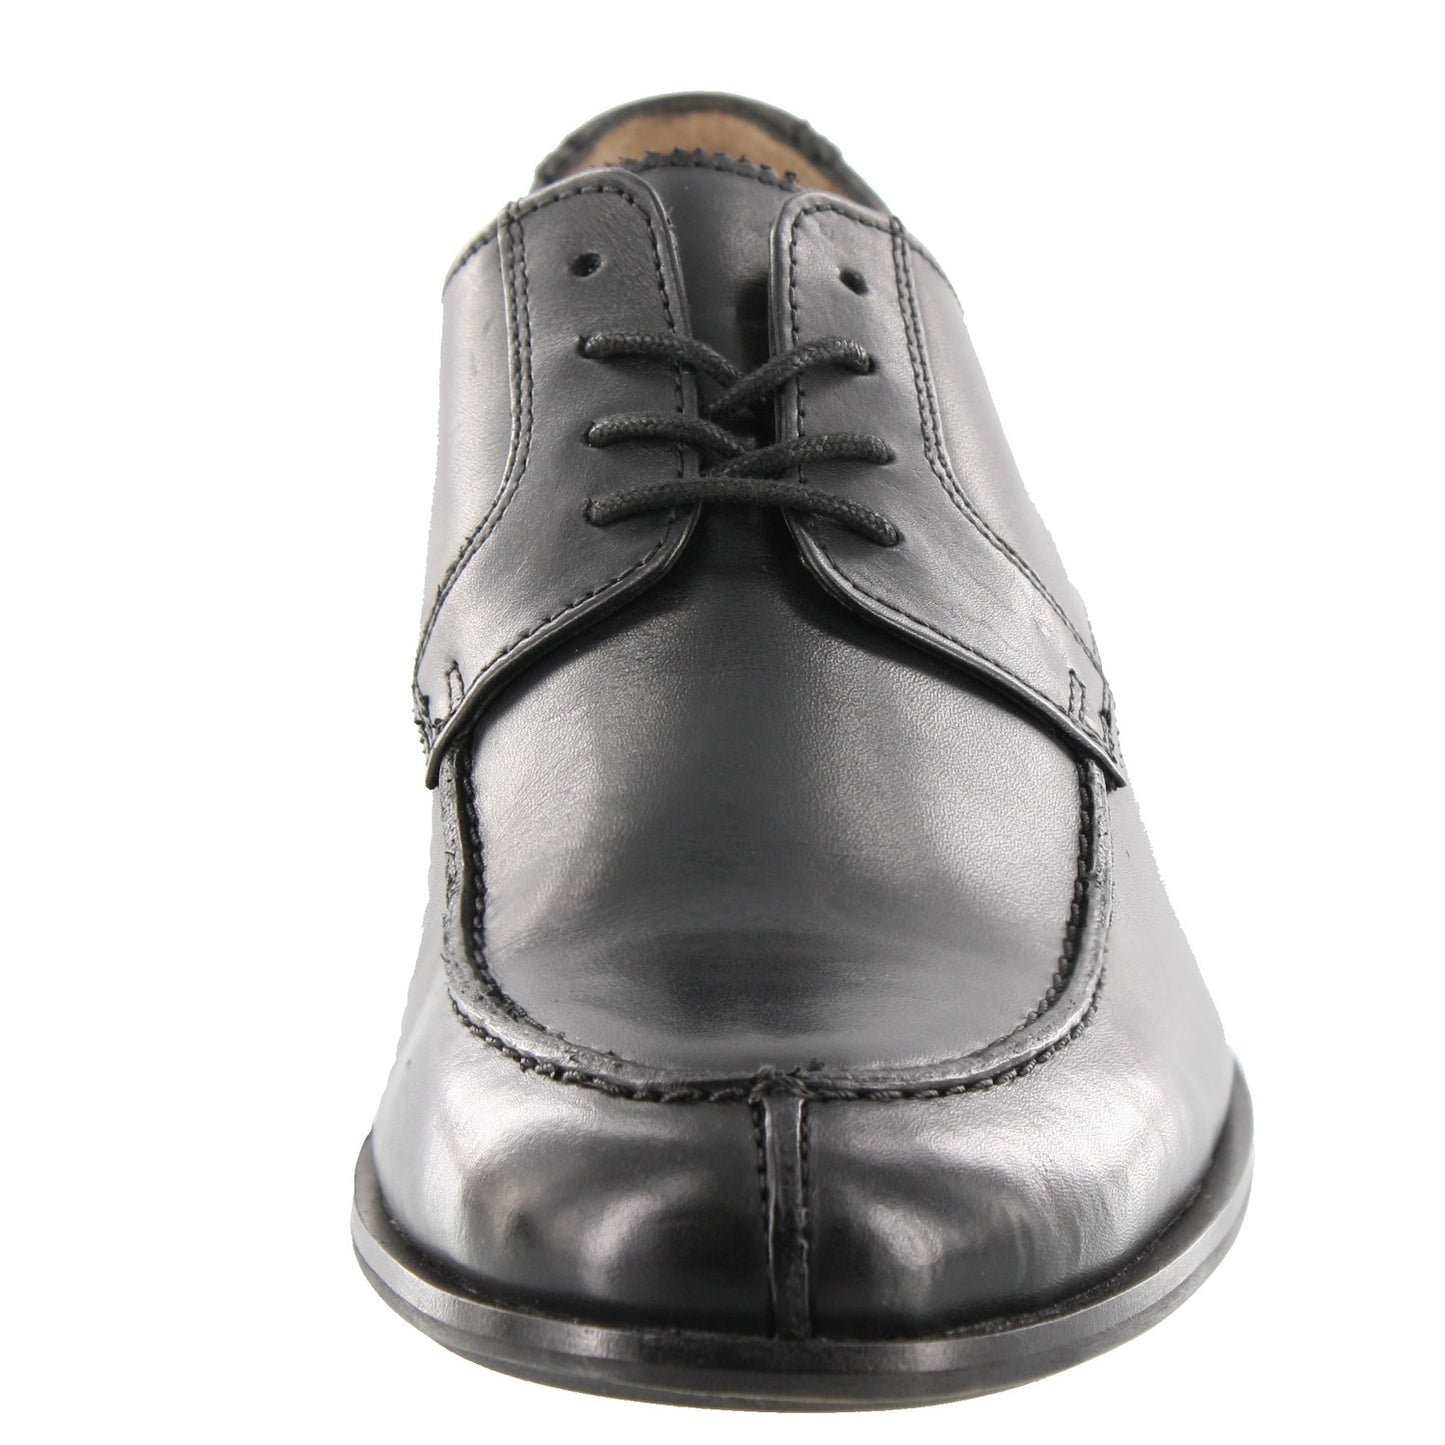 Clarks Bostonian Jesper Dress Oxfords Shoes -Men's | Shoe City